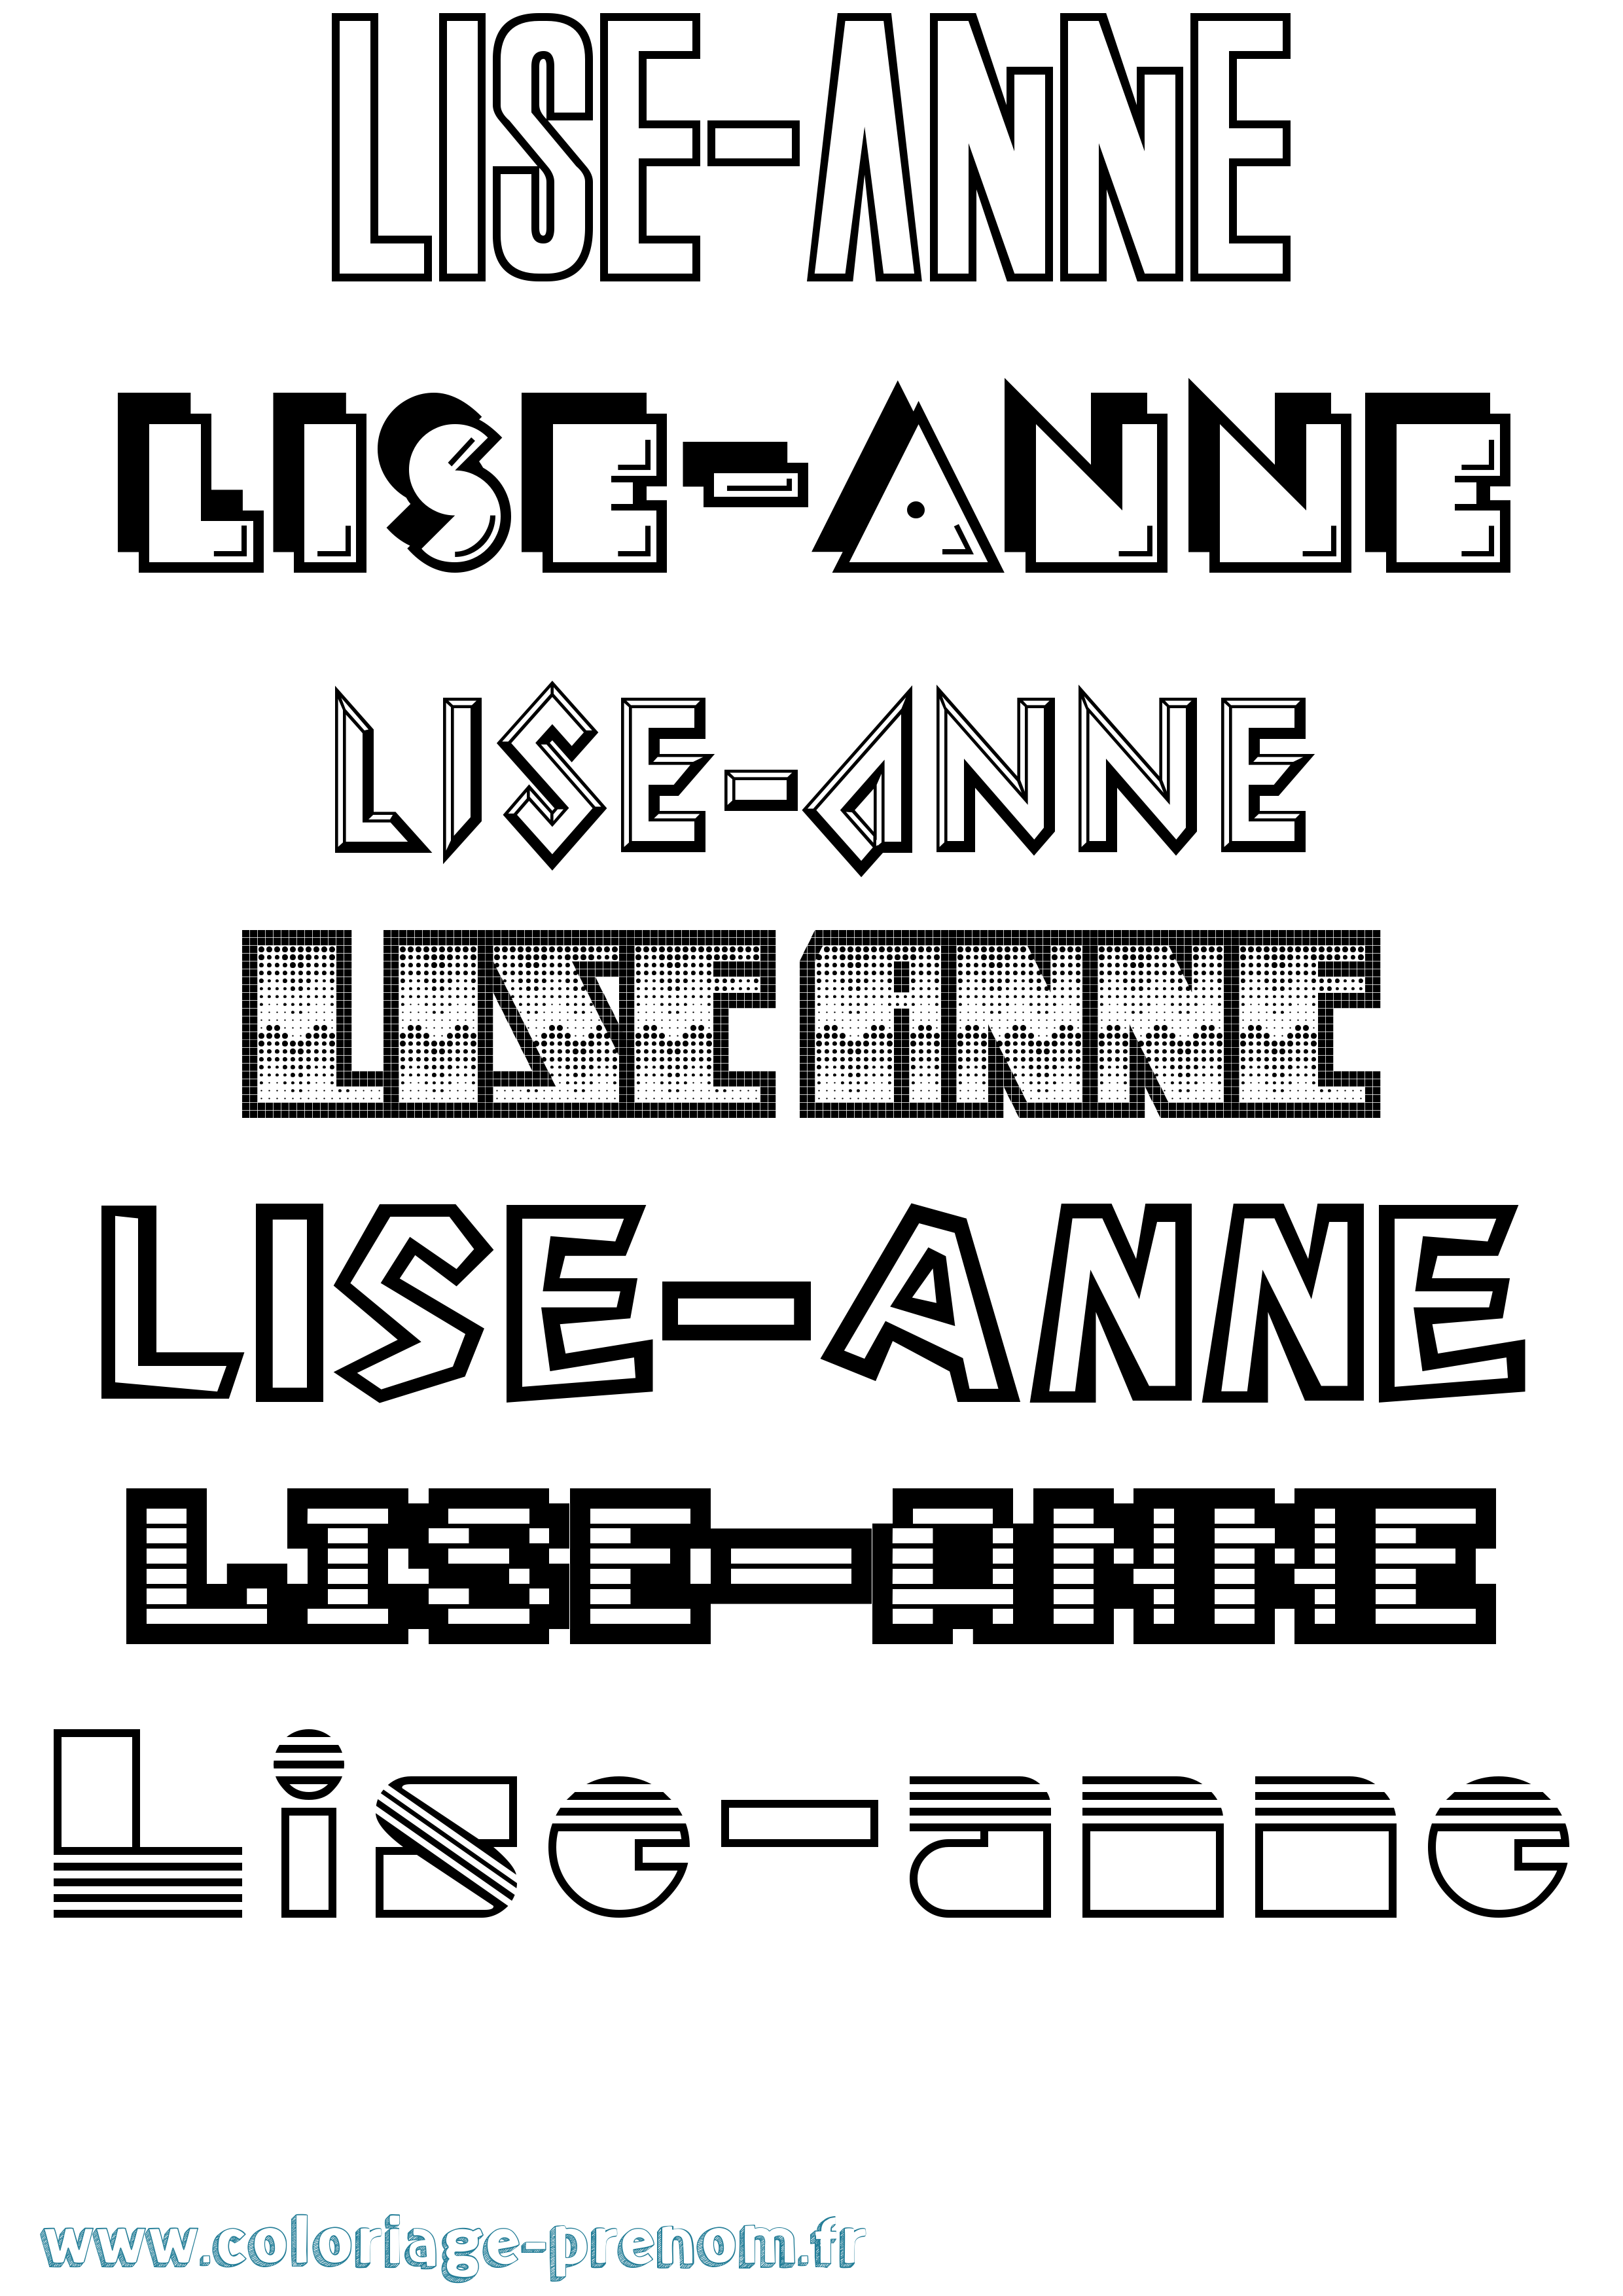 Coloriage prénom Lise-Anne Jeux Vidéos